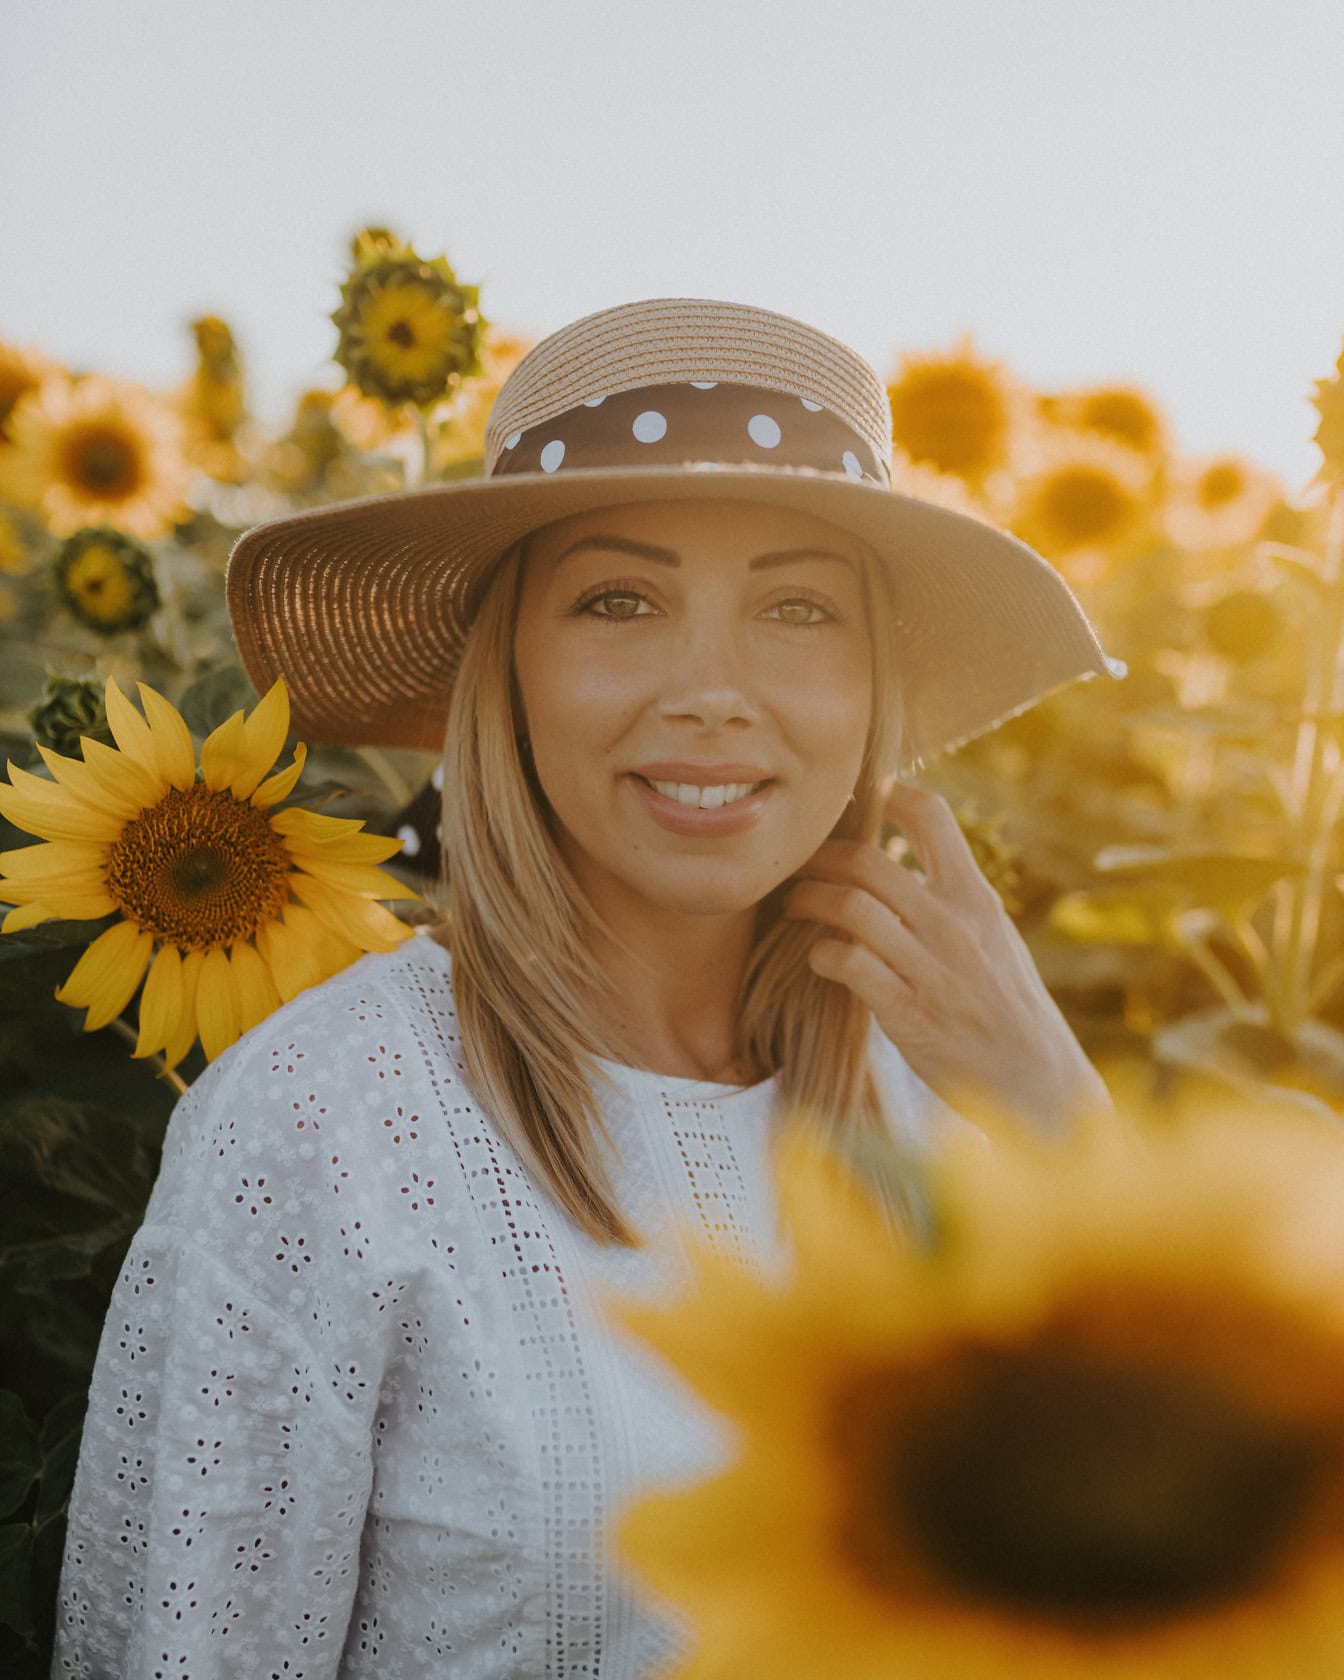 Επαγγελματική φωτογραφία πορτρέτου με ένα όμορφο μοντέλο φωτογραφίας νεαρής γυναίκας που φοράει ένα ψάθινο καπέλο σε ένα ηλιοτρόπιο με τις ακτίνες του ήλιου ως οπίσθιο φωτισμό